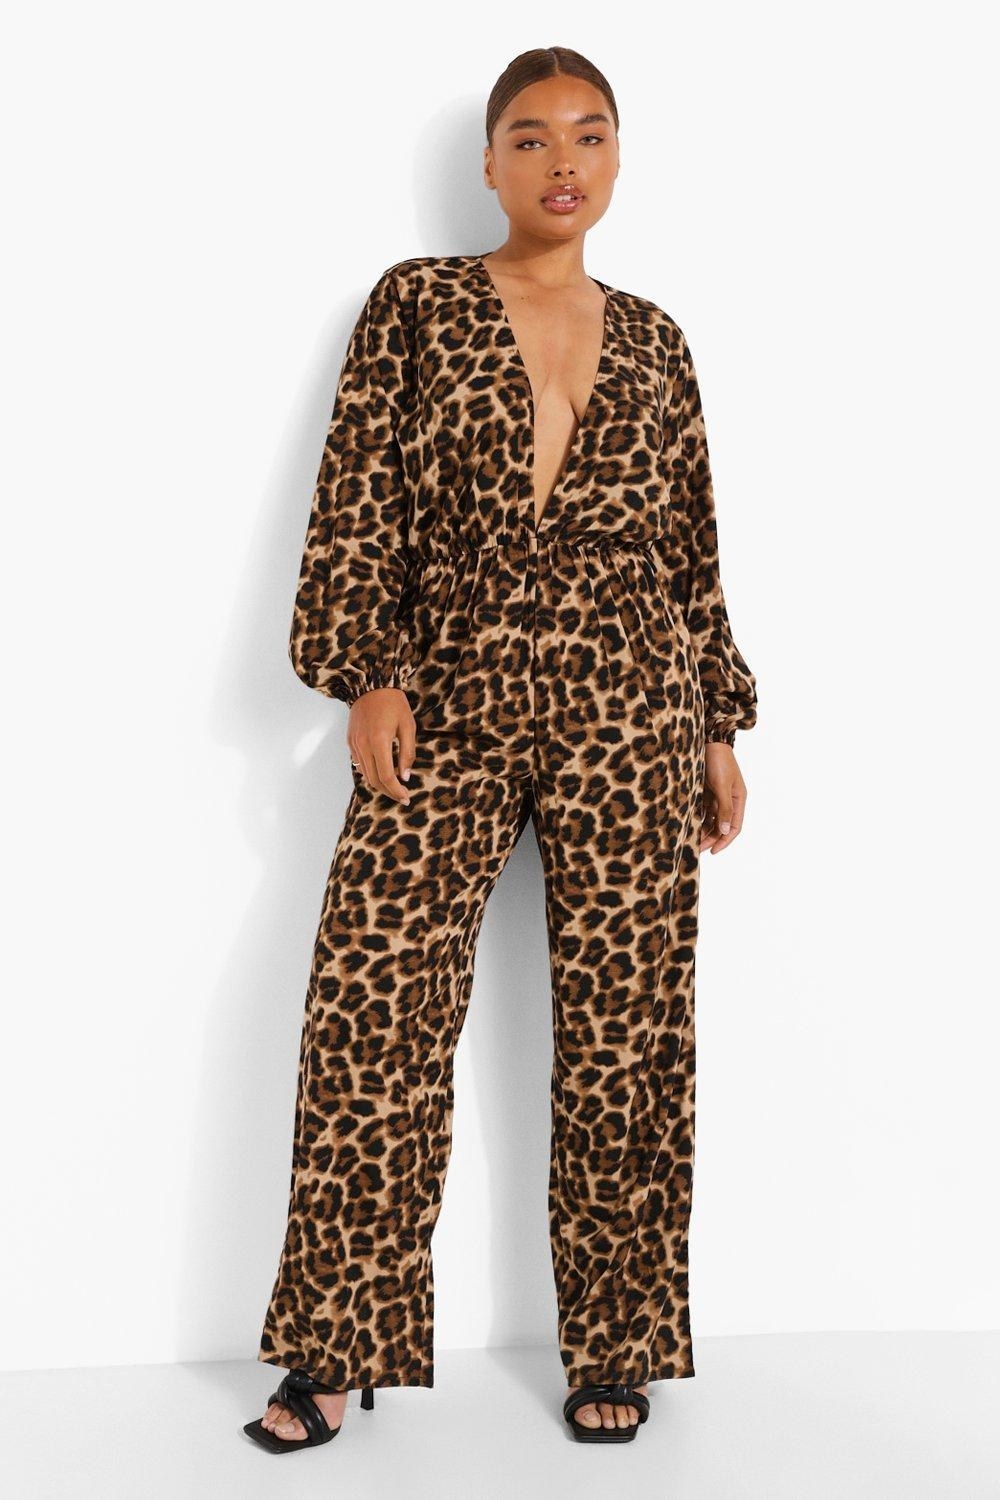 Model wearing leopard jumpsuit